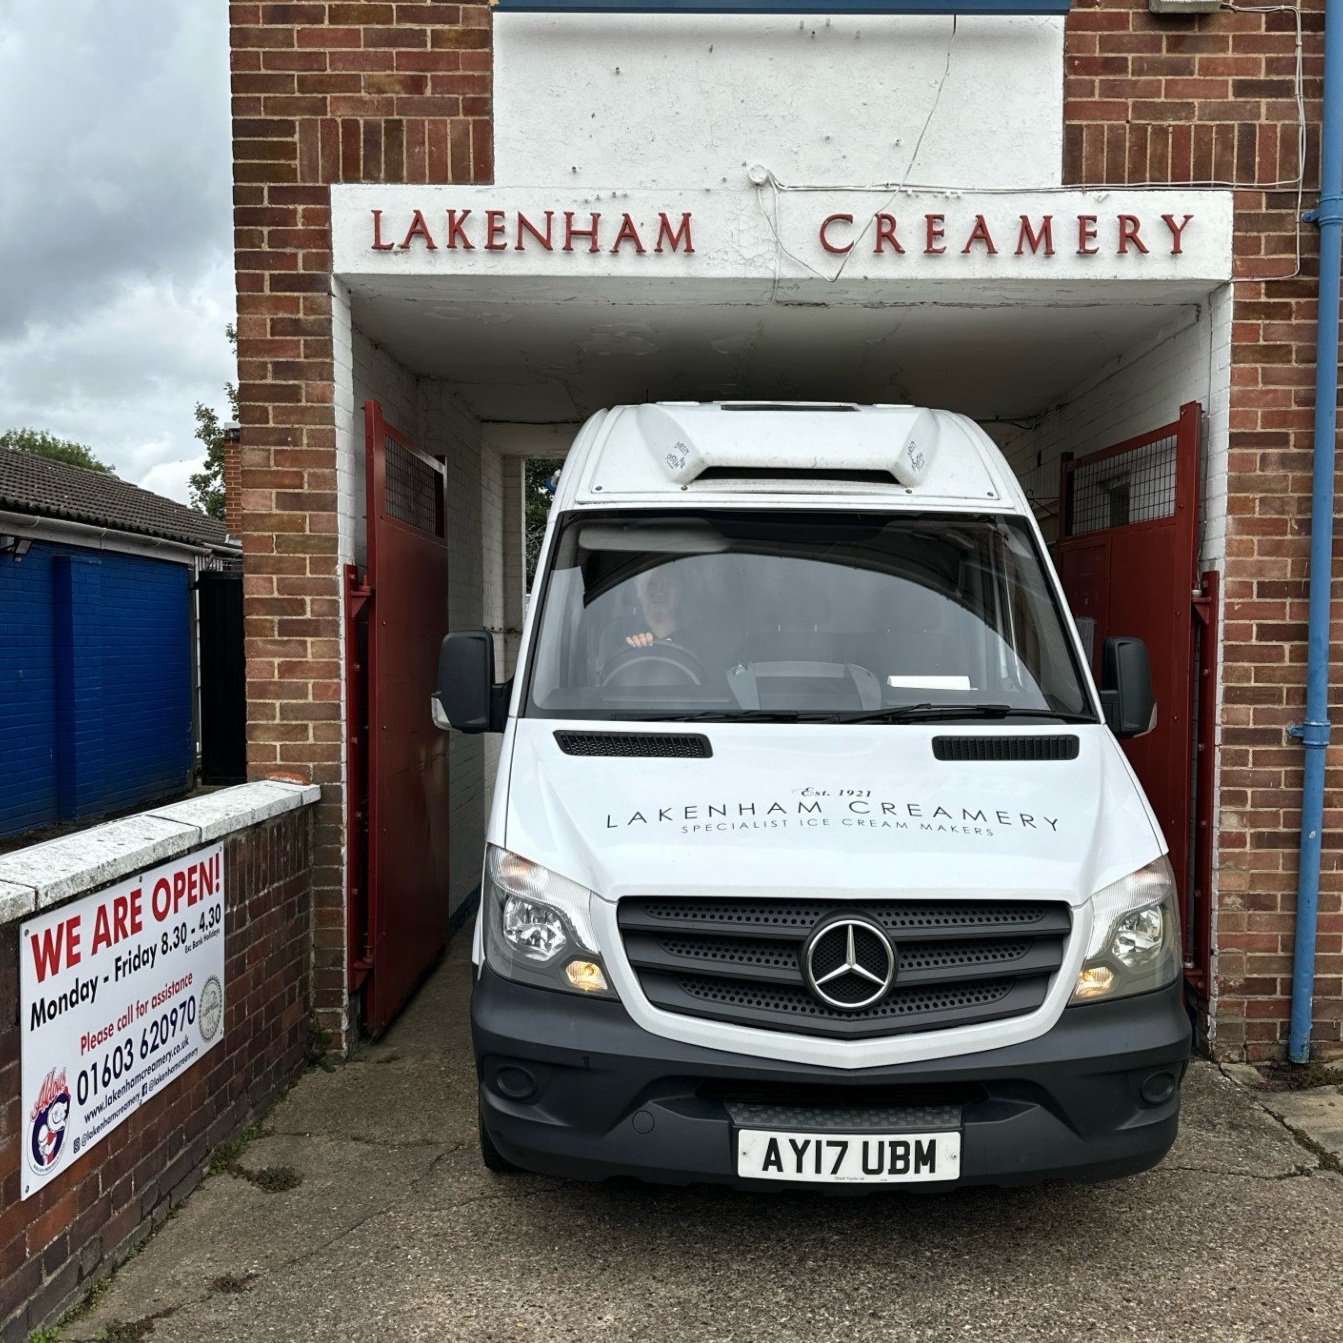 Leaving Lakenham Creamery